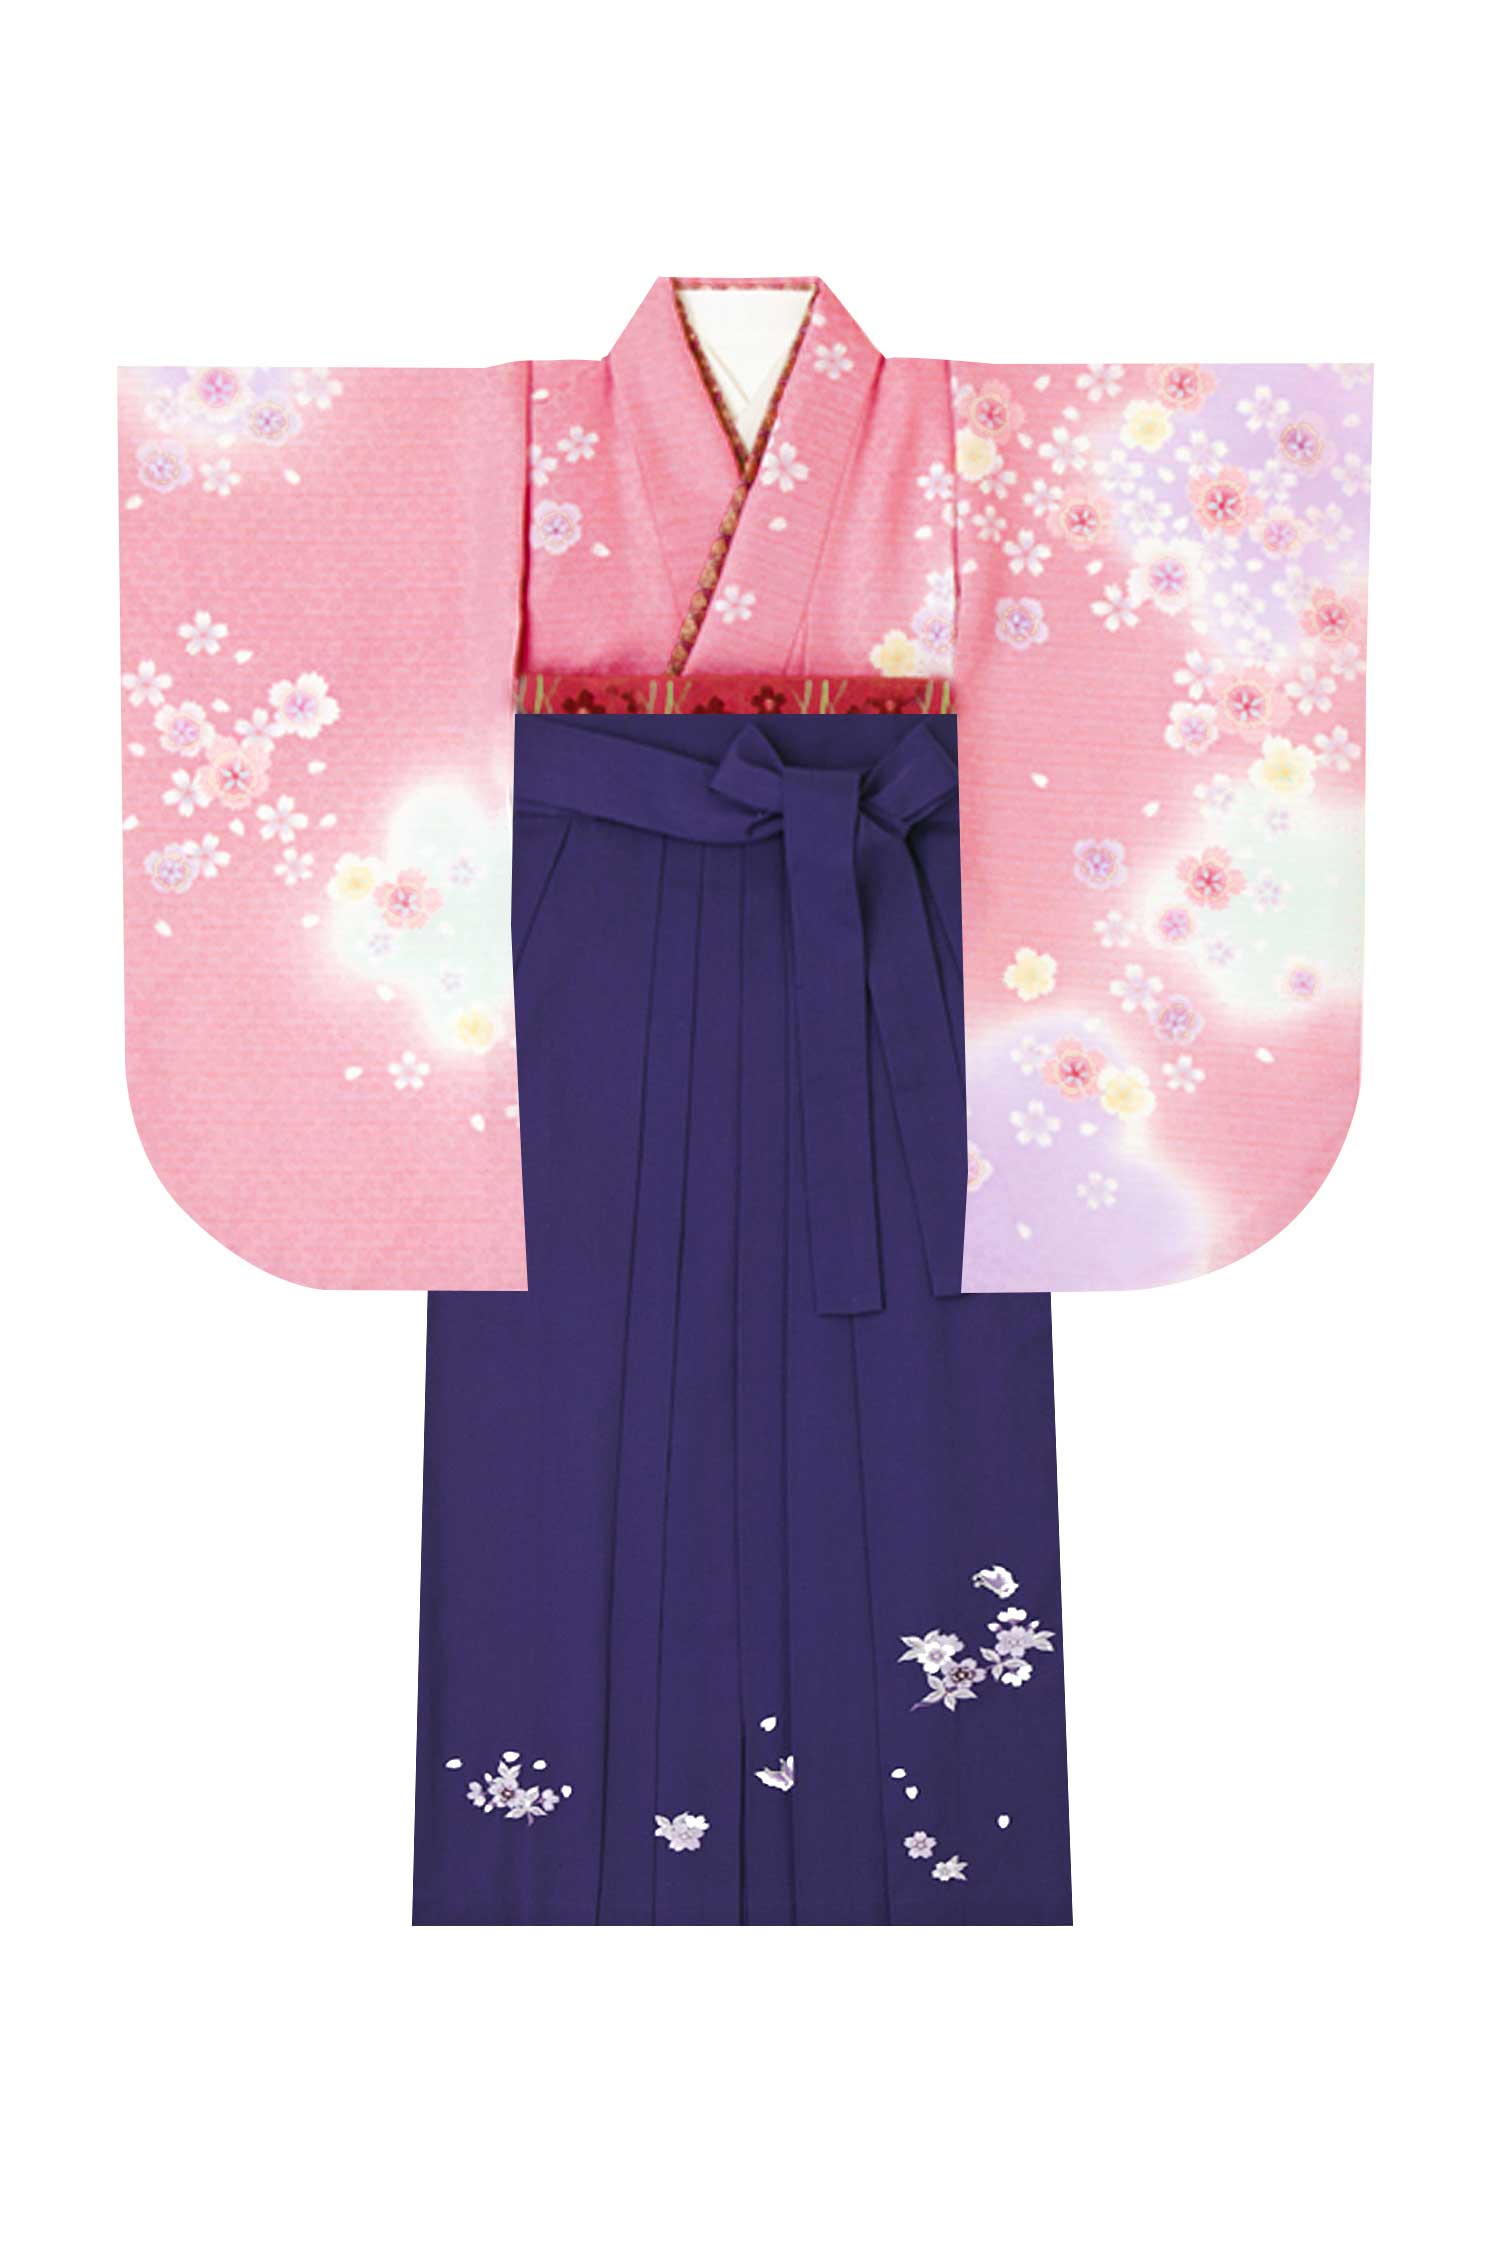 レンタル袴&着物 「ピンク いろ桜」&「紫 桜蝶刺しゅう」 | 小振袖